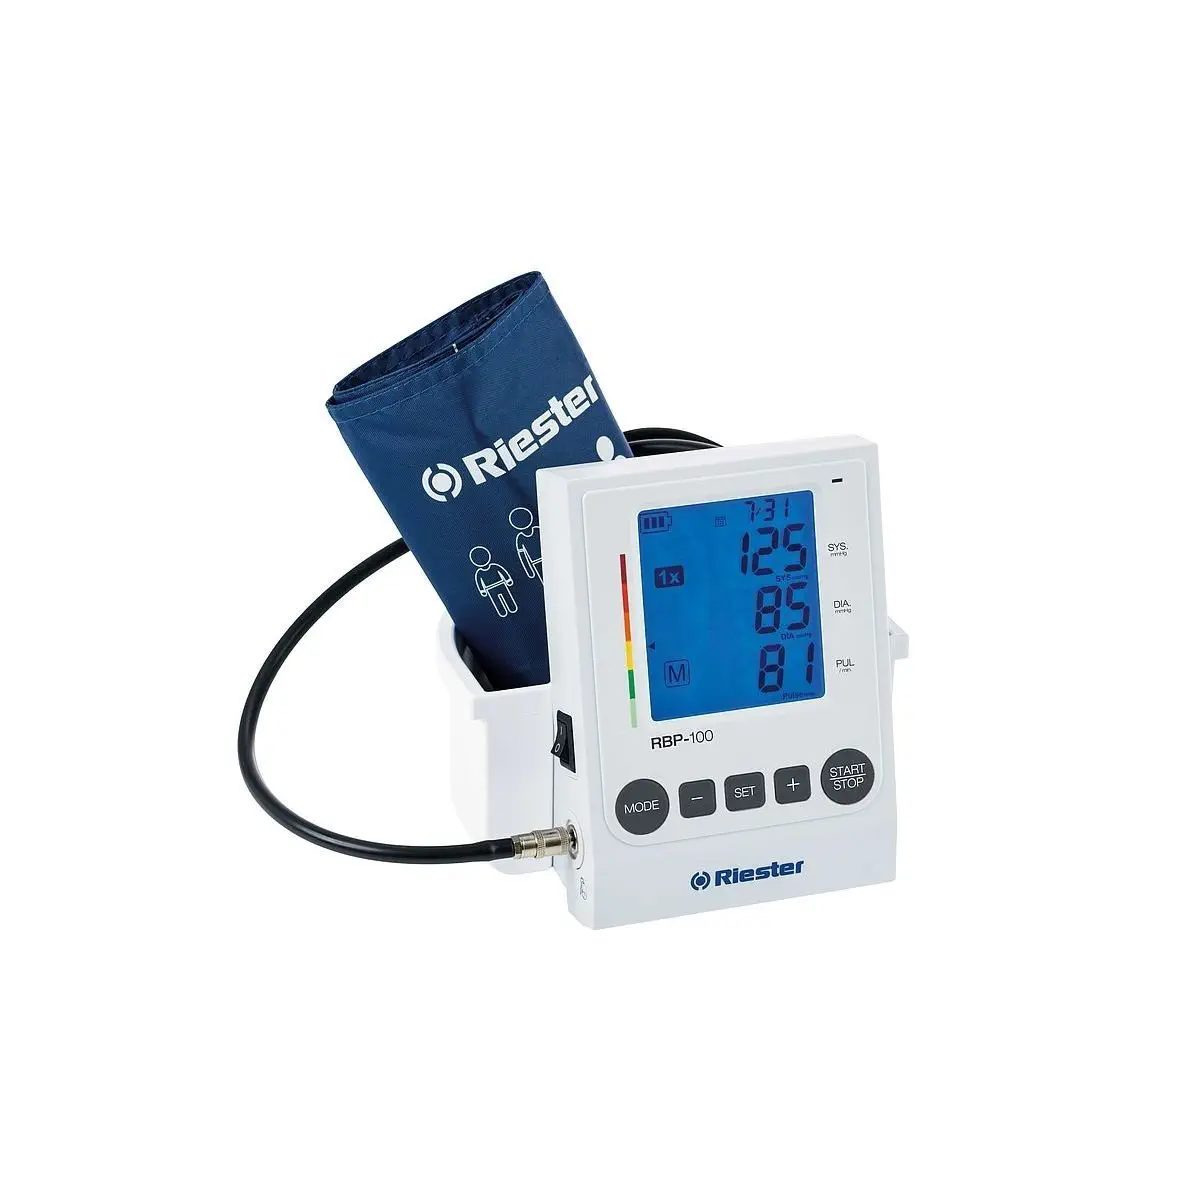 เครื่องวัดความดันโลหิตชนิดอัตโนมัติ  Automated blood pressure monitor RBP-100  Riester